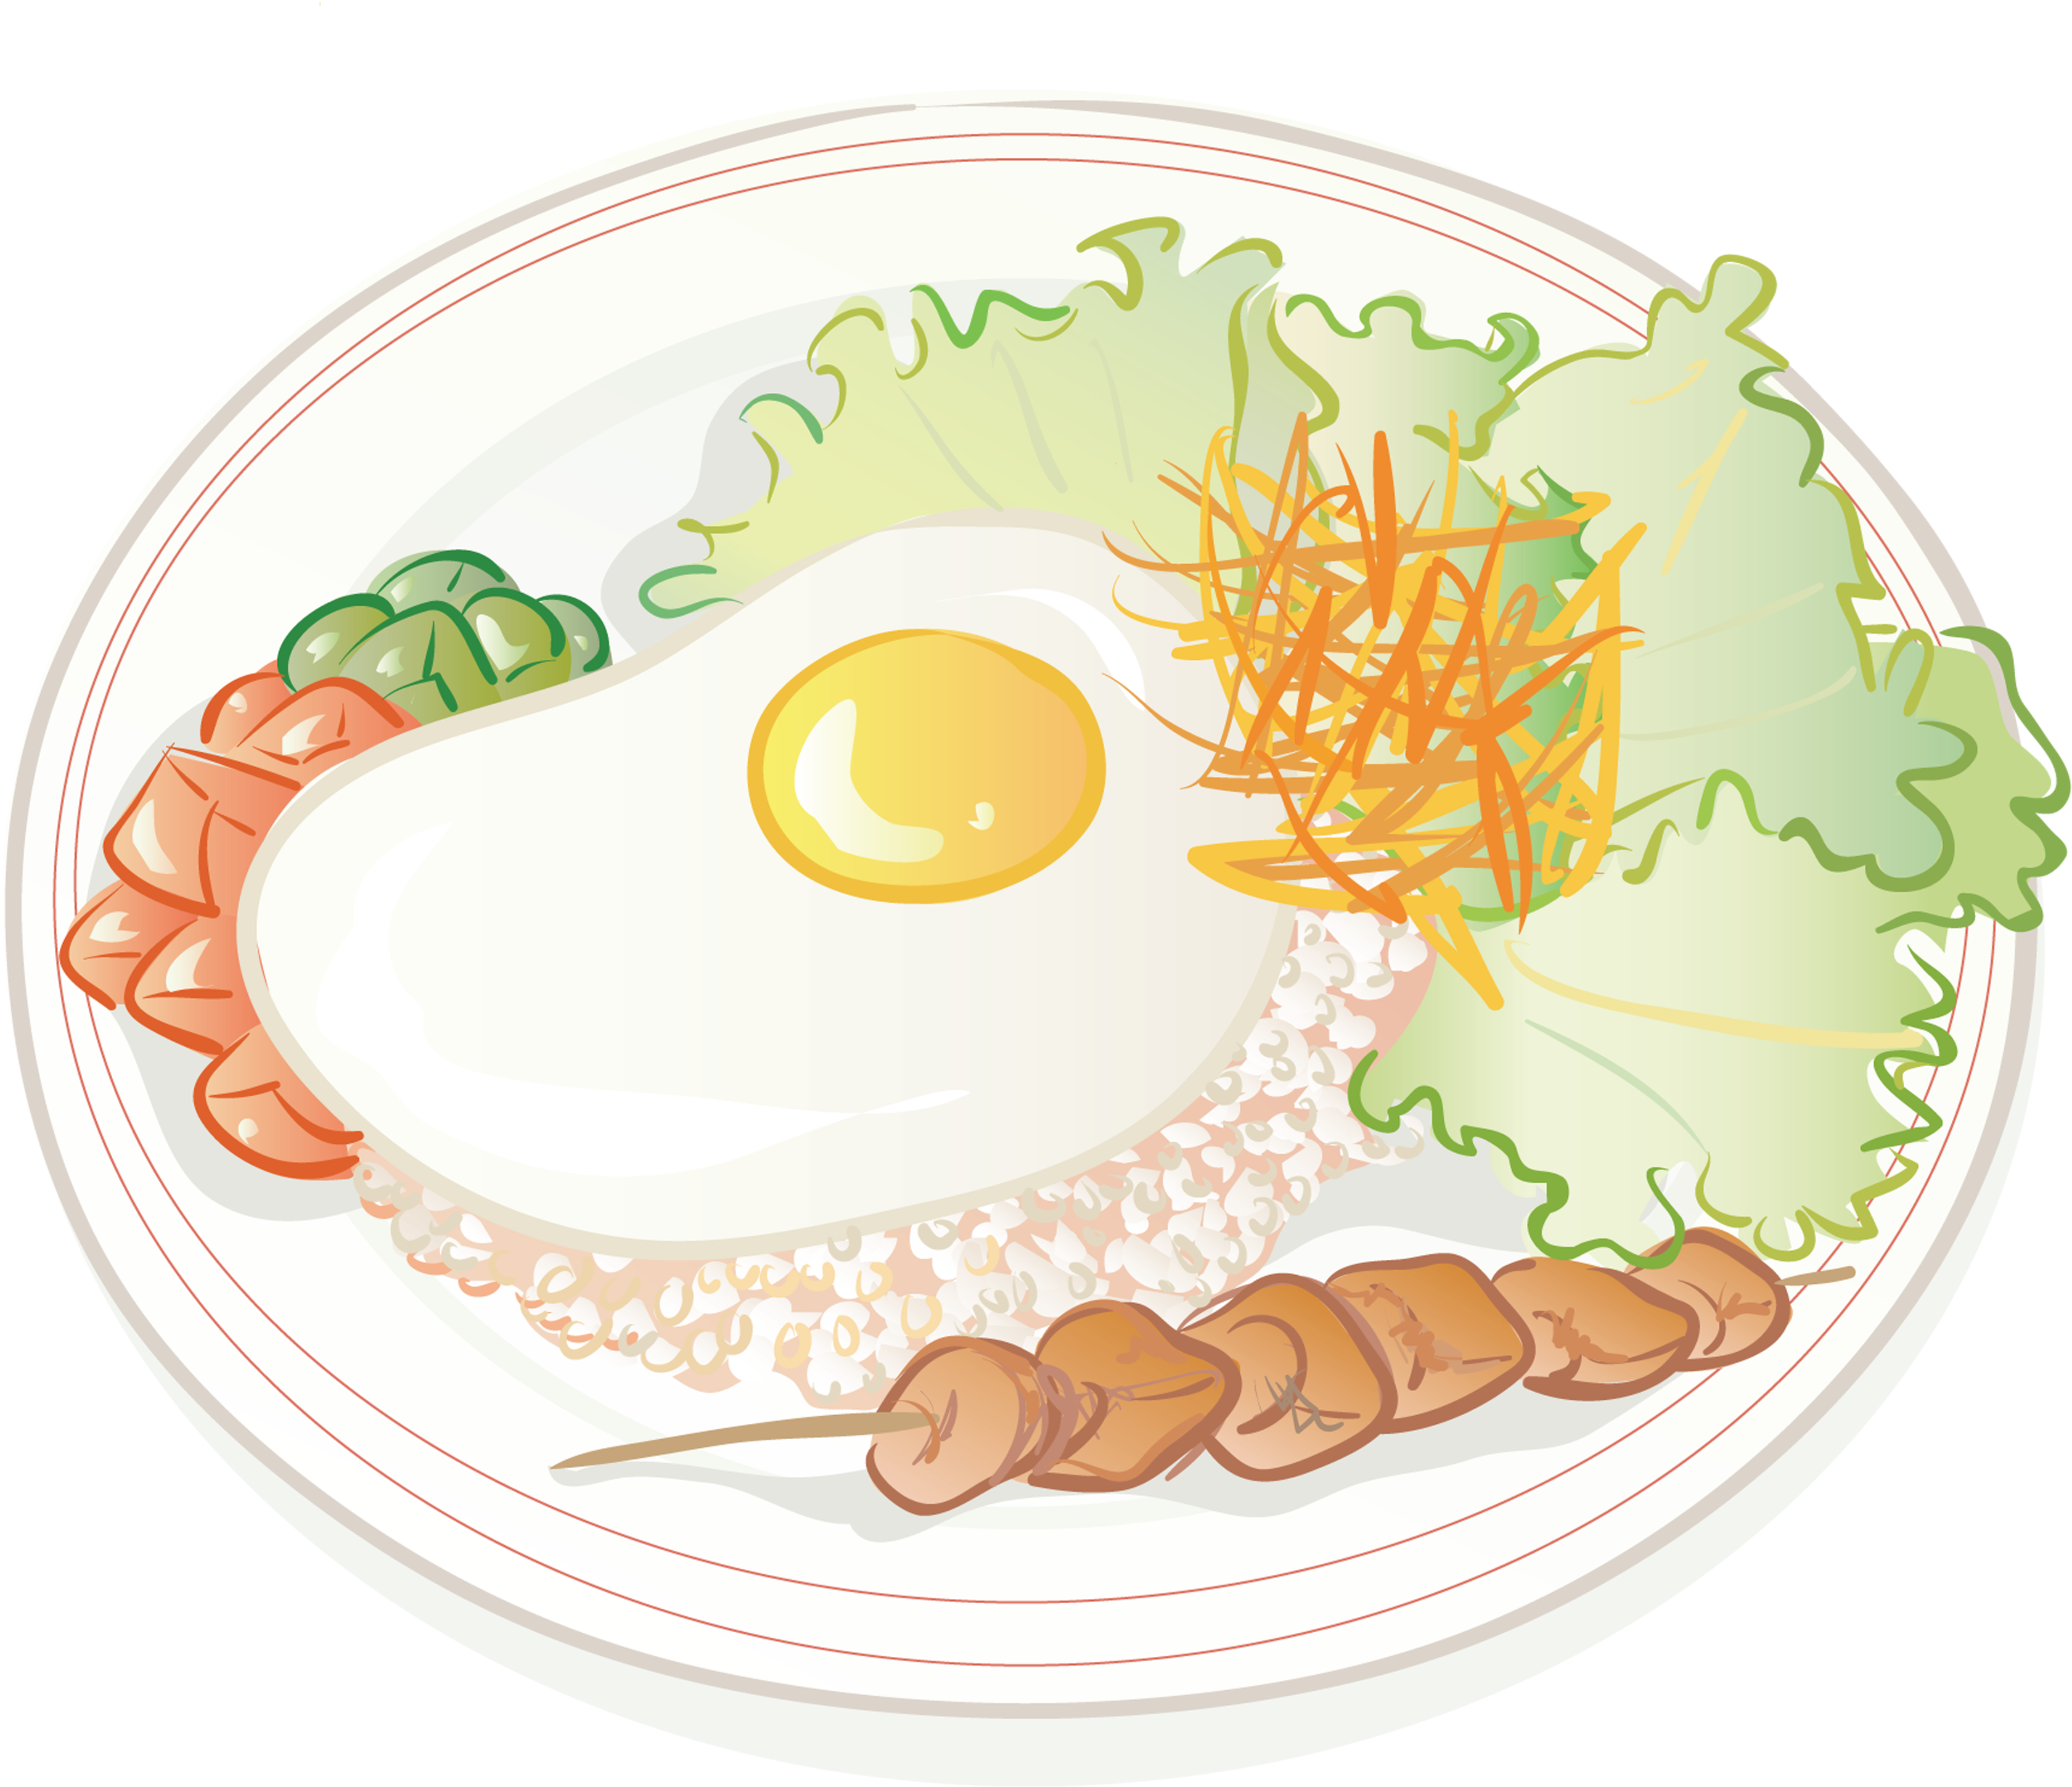 Desenho de ovo frito e arroz frito, culinária chinesa, comida